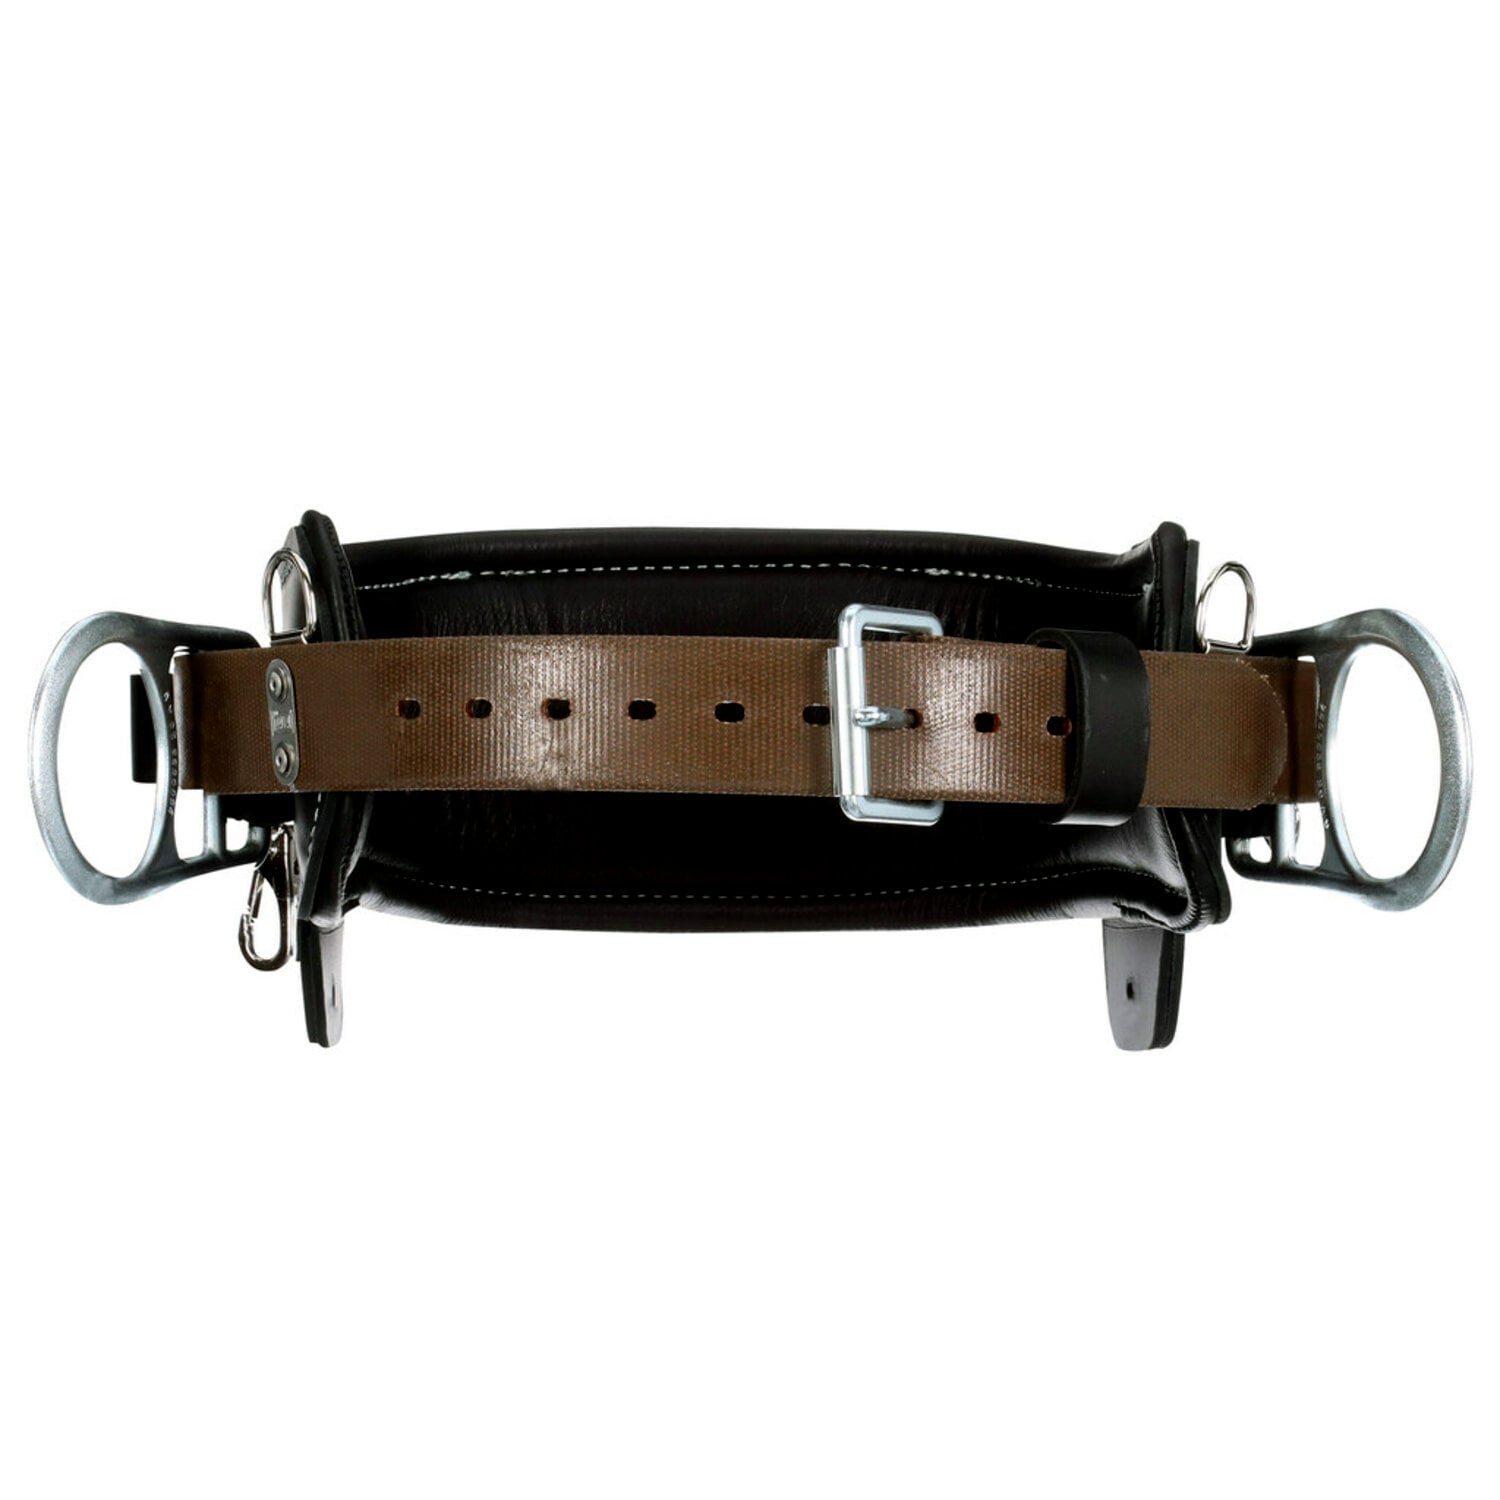 7012815137 - 3M DBI-SALA 2D Lineman Tongue Buckle Positioning Belt 1003242, Leather, Black, D20